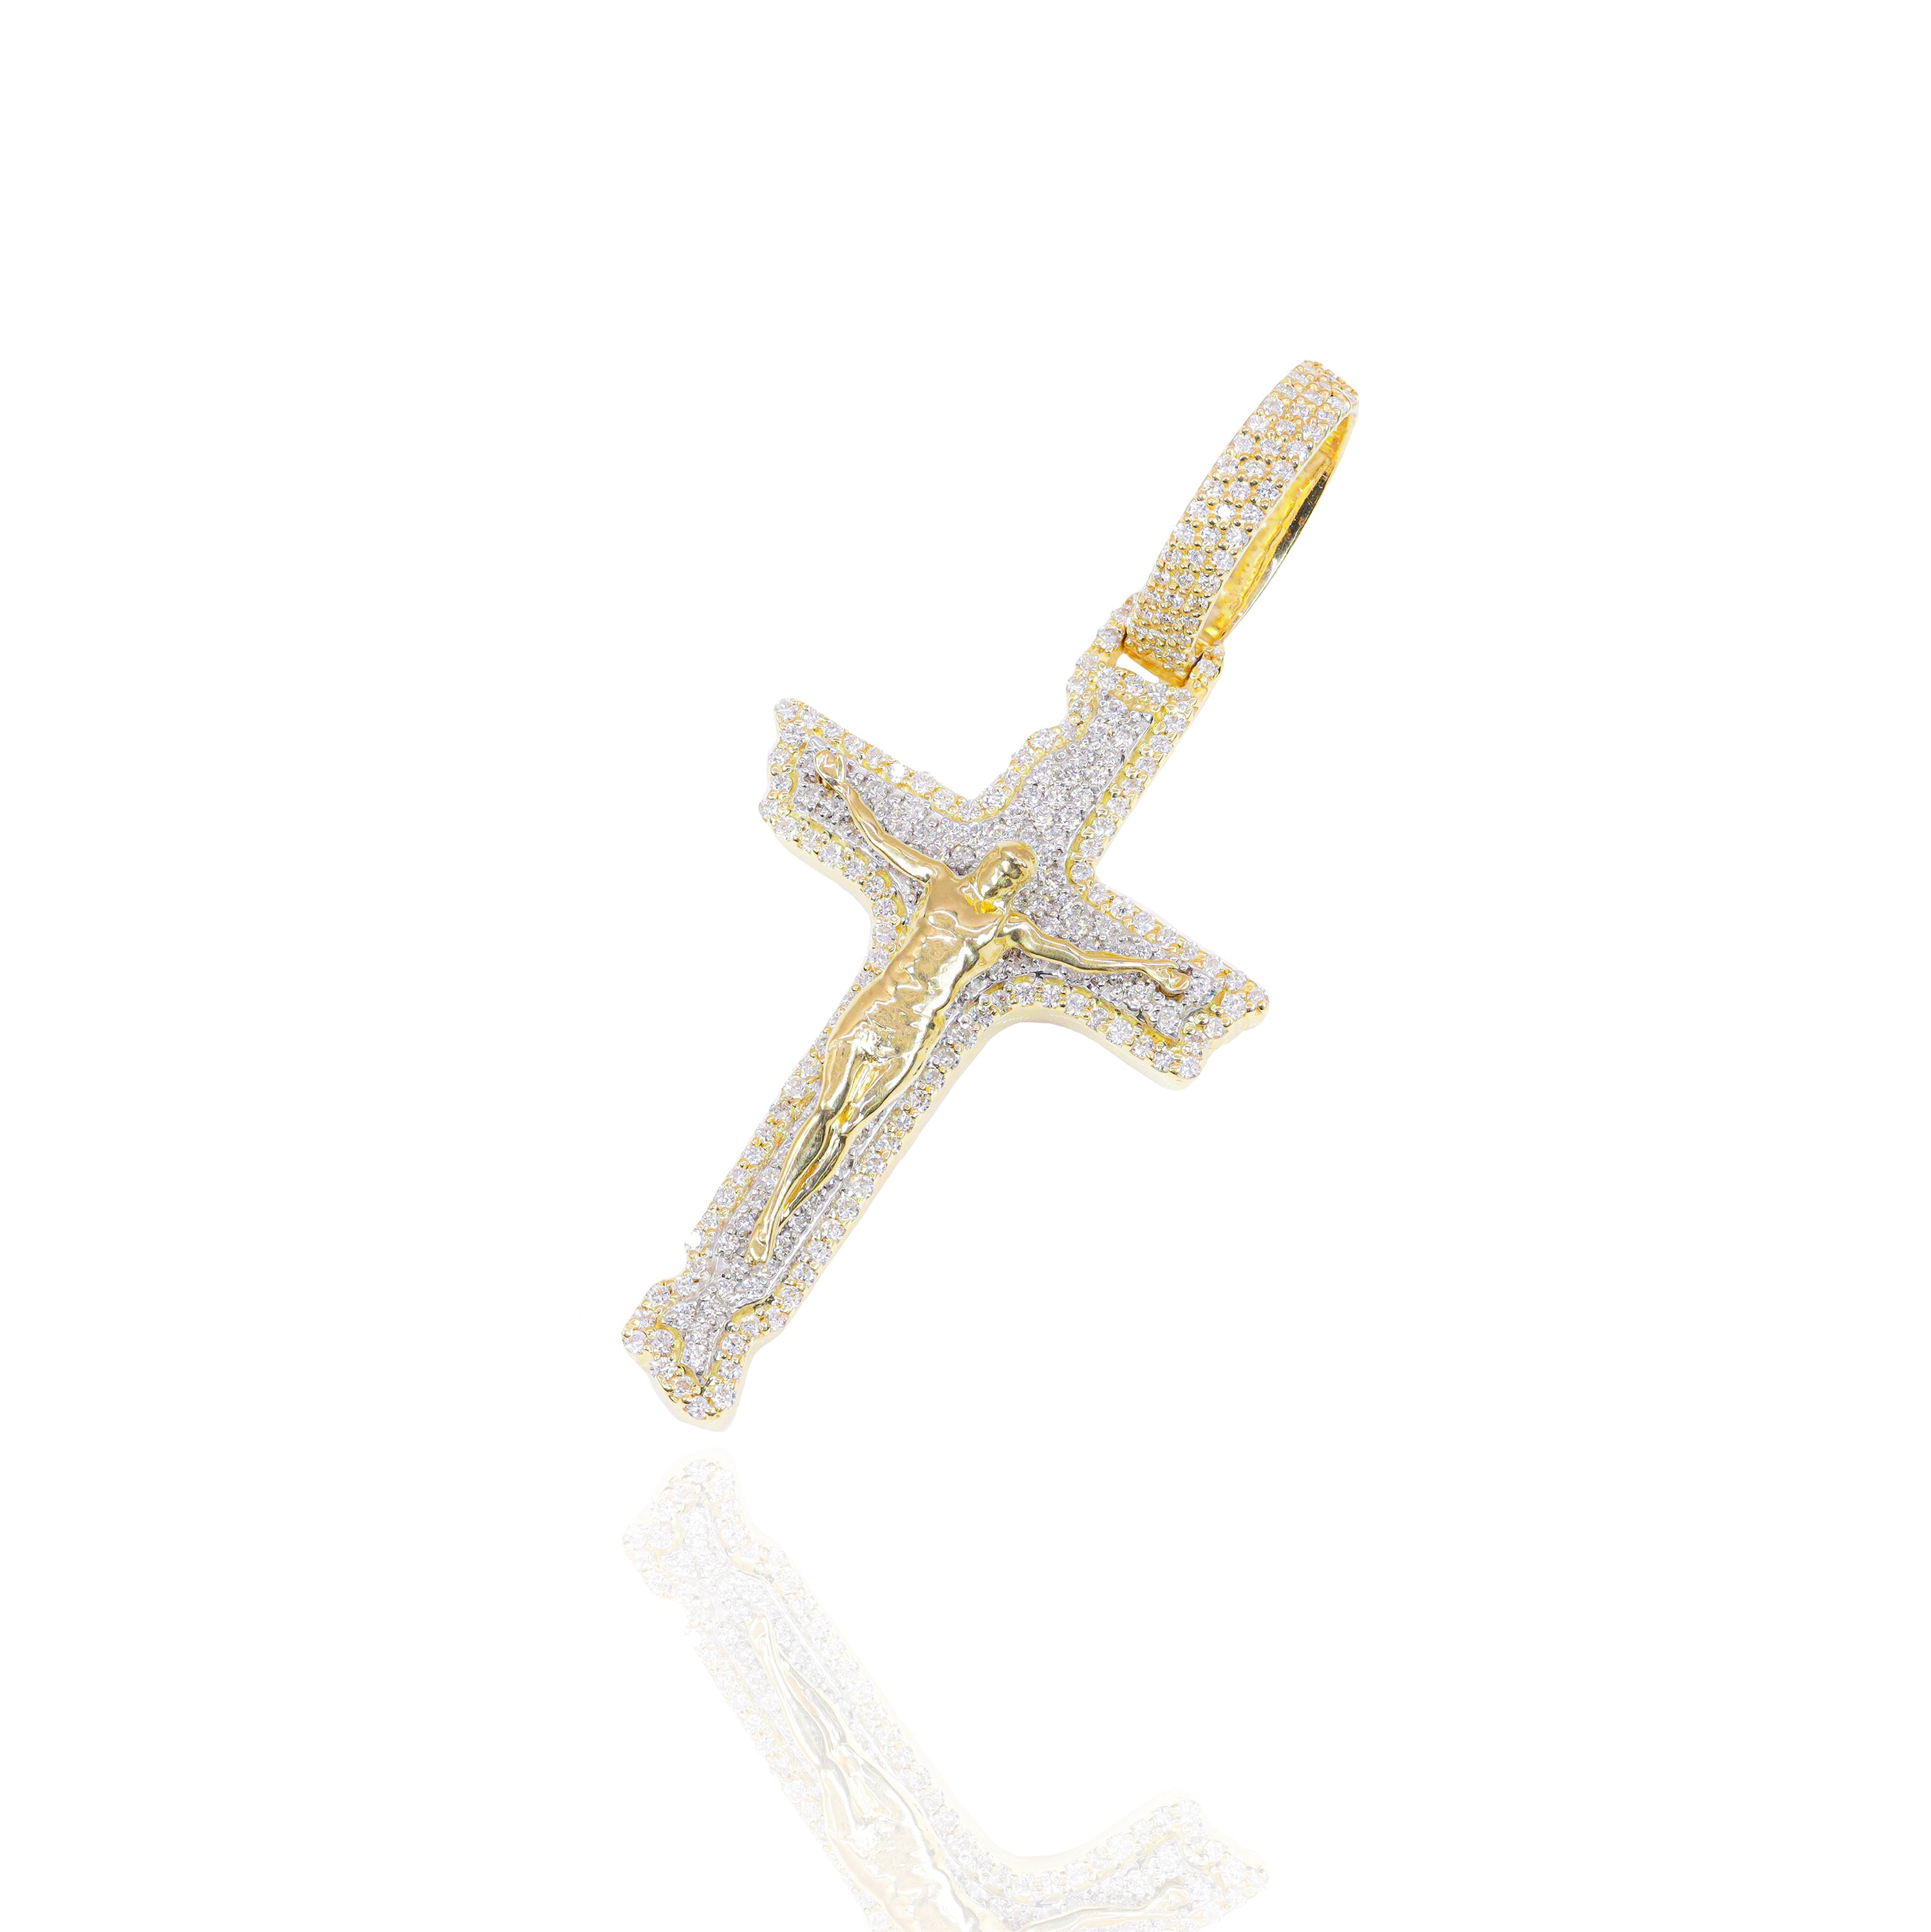 Diamond Cross With Jesus Pendant